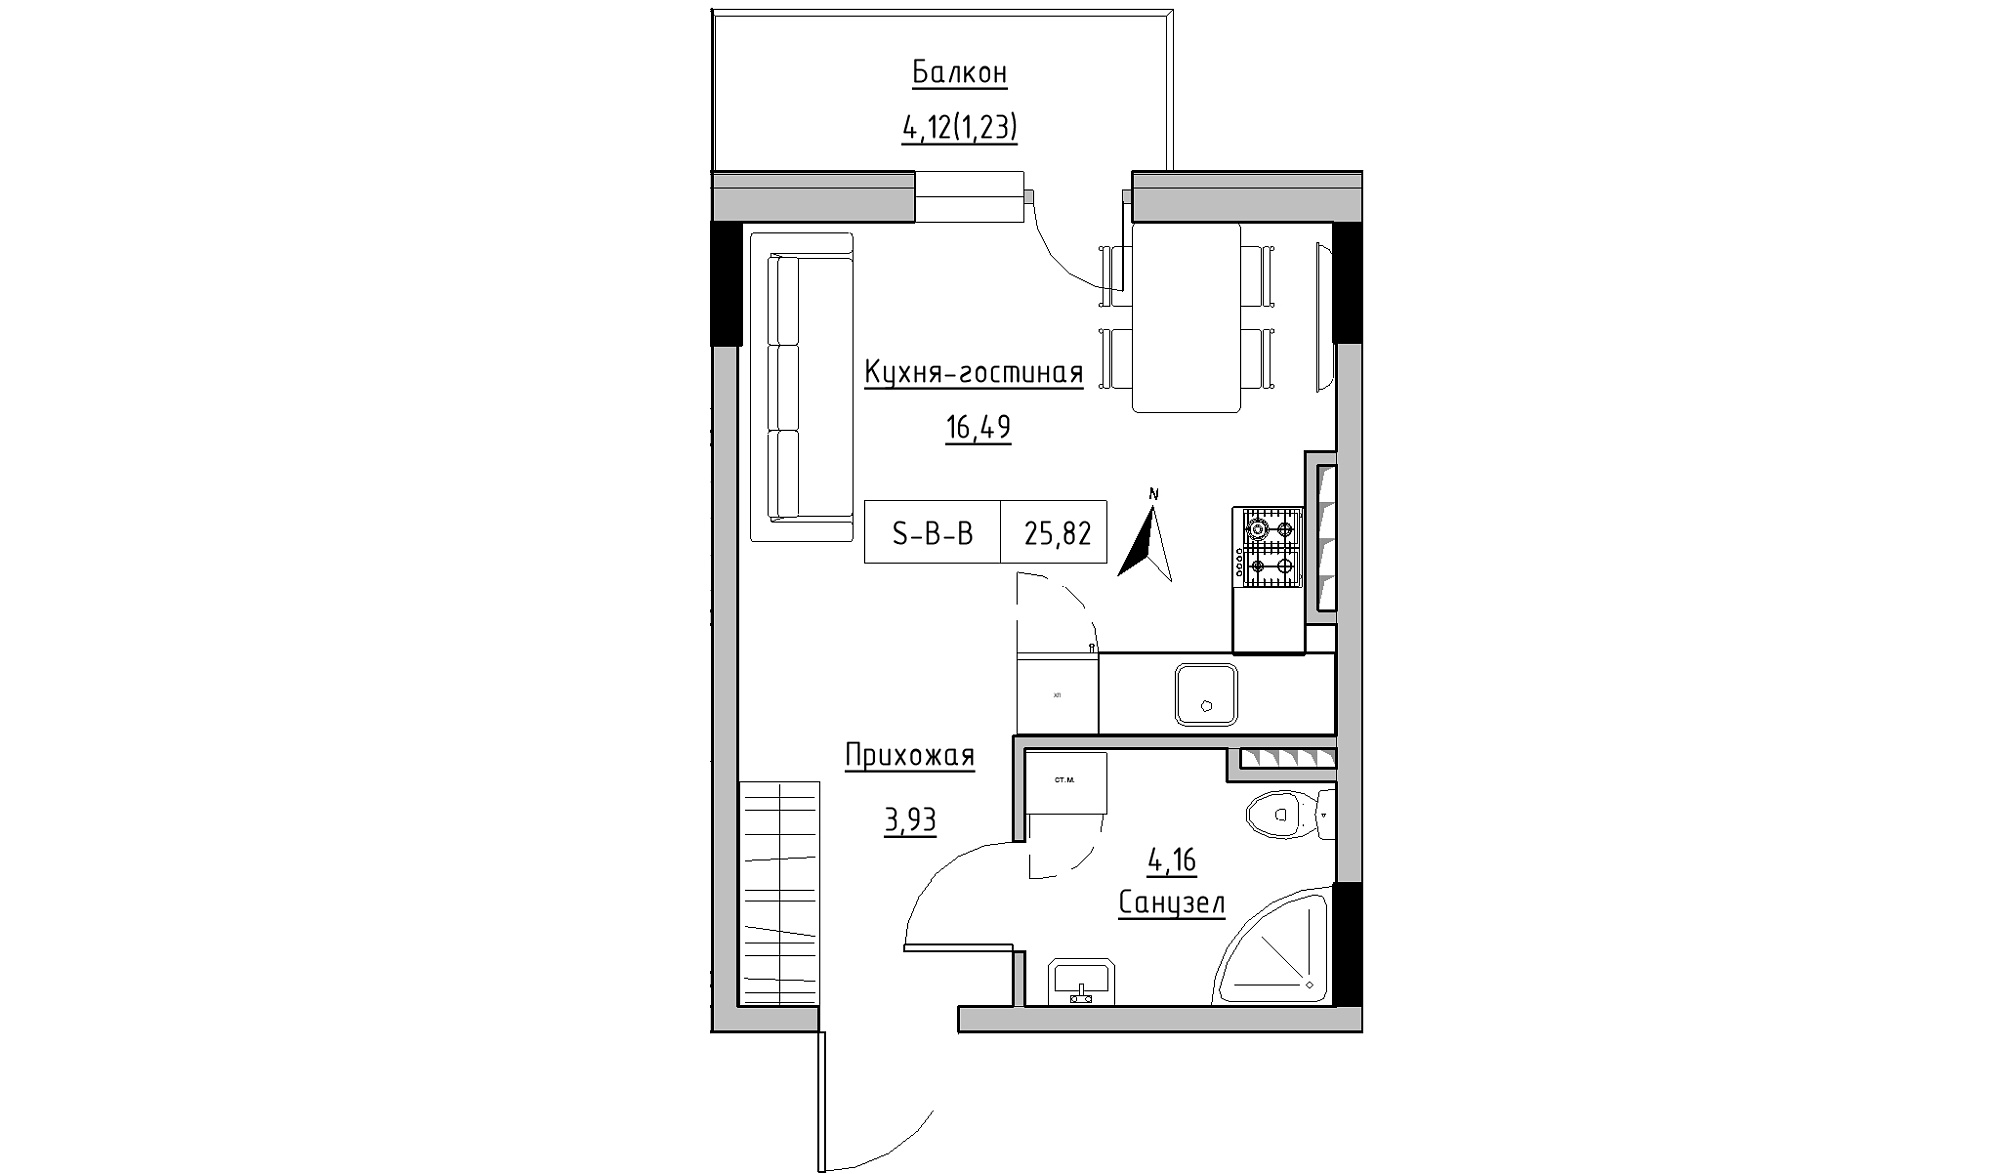 Планування Smart-квартира площею 25.82м2, KS-025-04/0007.